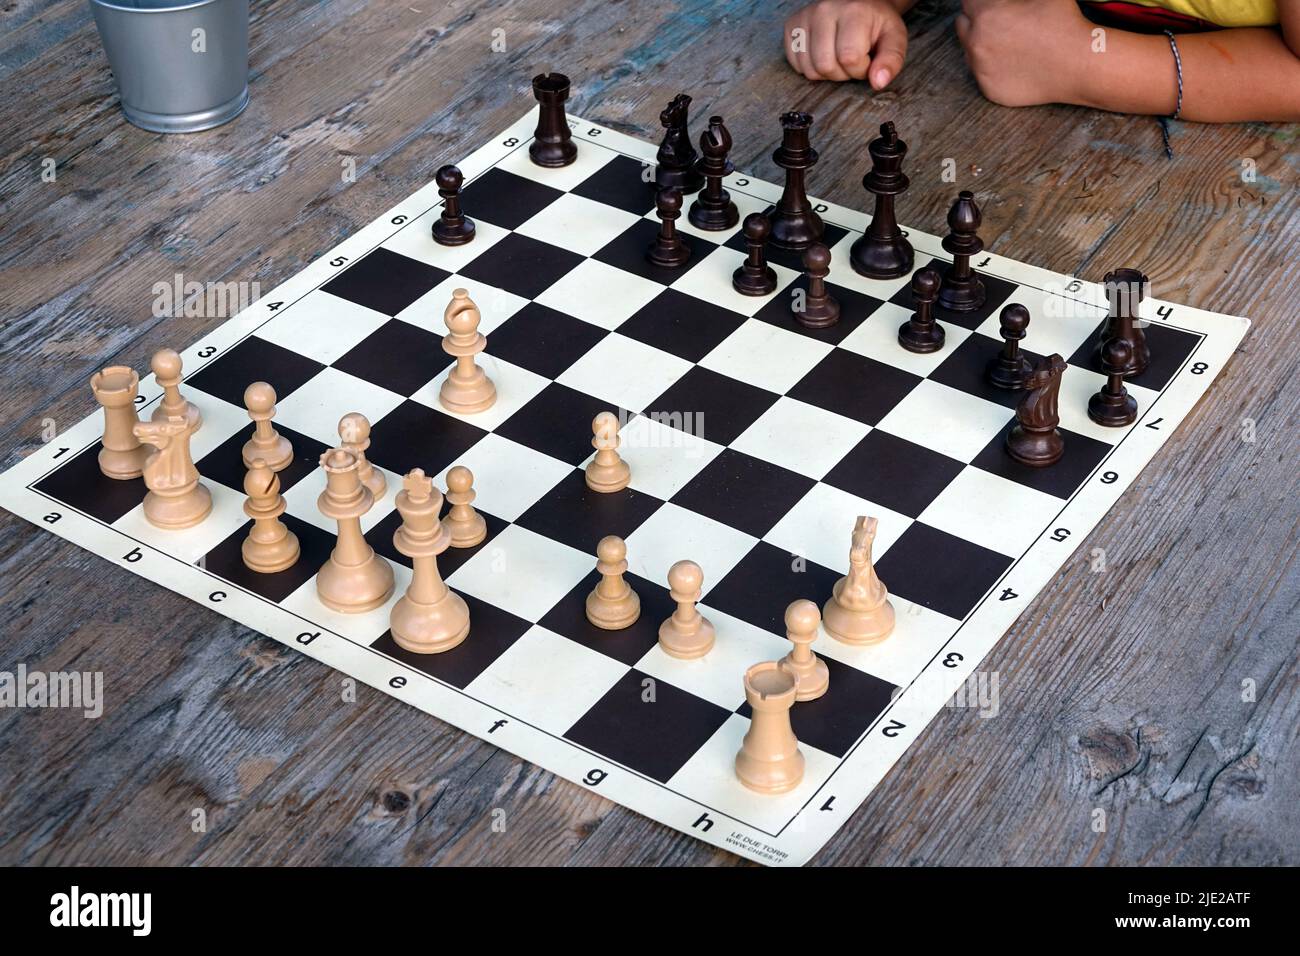 Détail d'un jeu d'échecs sur un plateau d'échecs de tournoi professionnel Banque D'Images